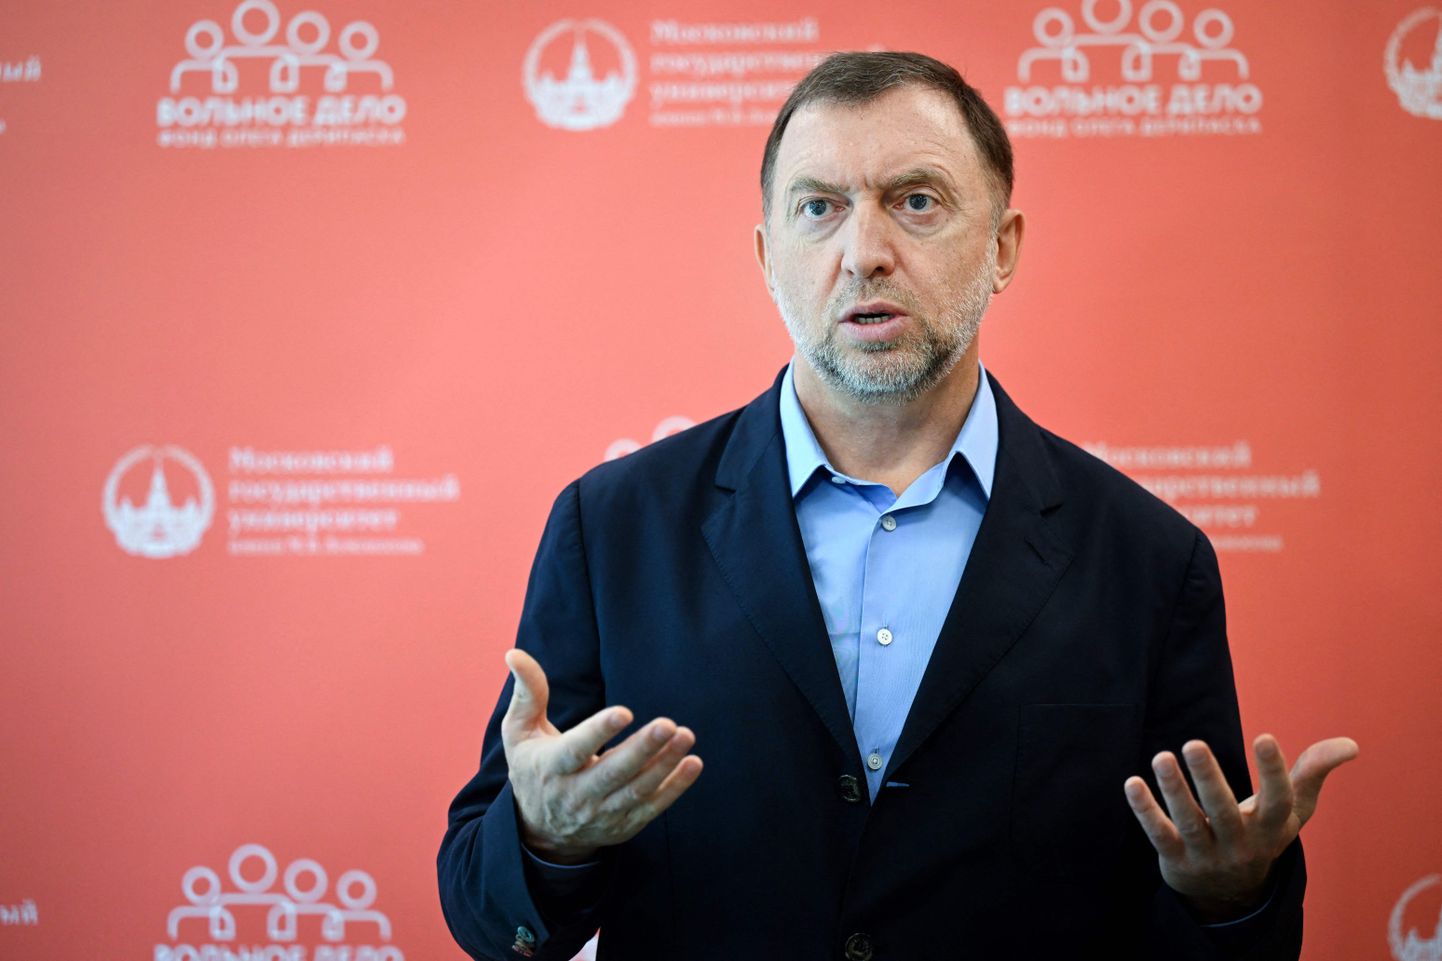 Venemaa oligarh Oleg Deripaska ütles, et Venemaal saab tuleval aastal raha otsa